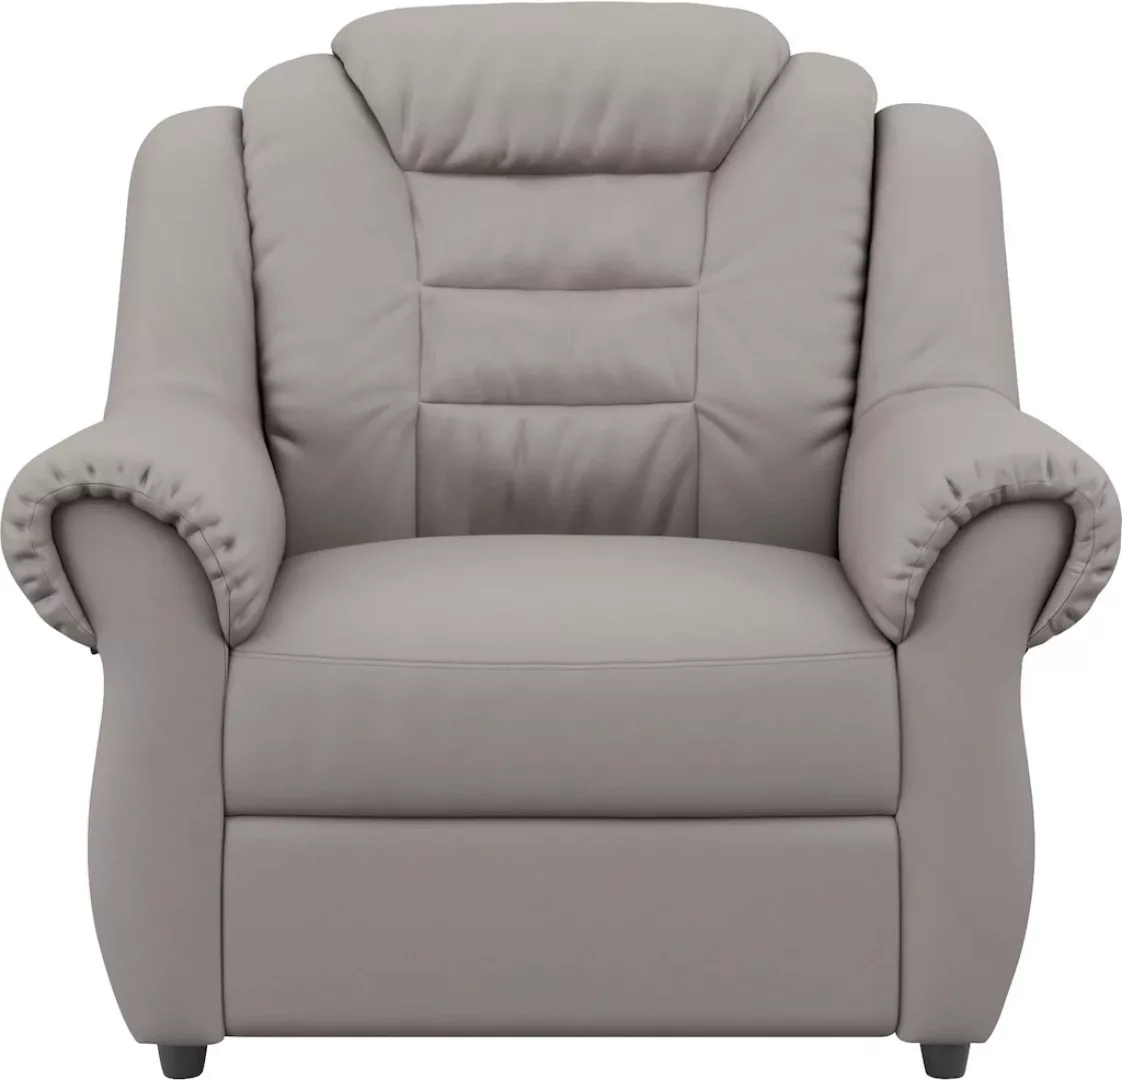 Home affaire Sessel "Boston", Sessel in klassischem Design mit hoher Rücken günstig online kaufen